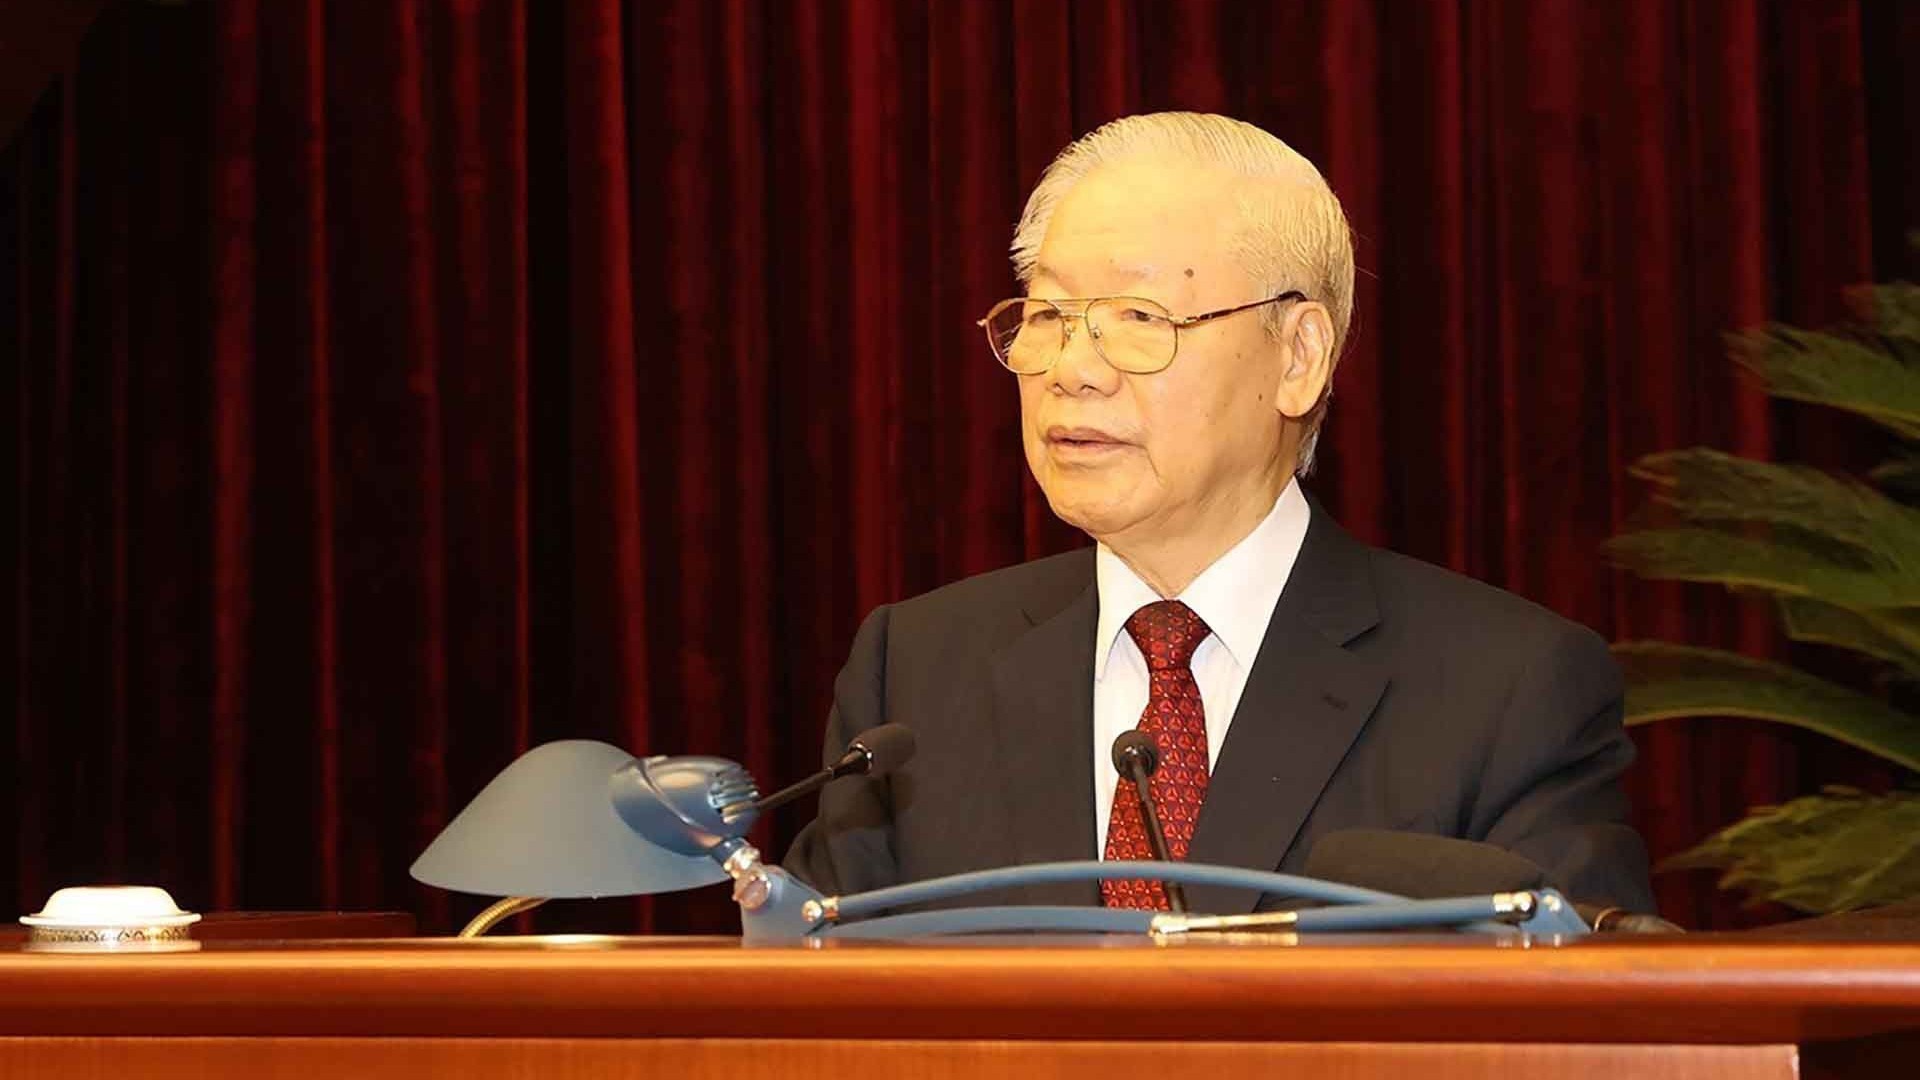 Phát biểu của Tổng Bí thư Nguyễn Phú Trọng tại Hội nghị toàn quốc triển khai Nghị quyết số 30 của Bộ Chính trị